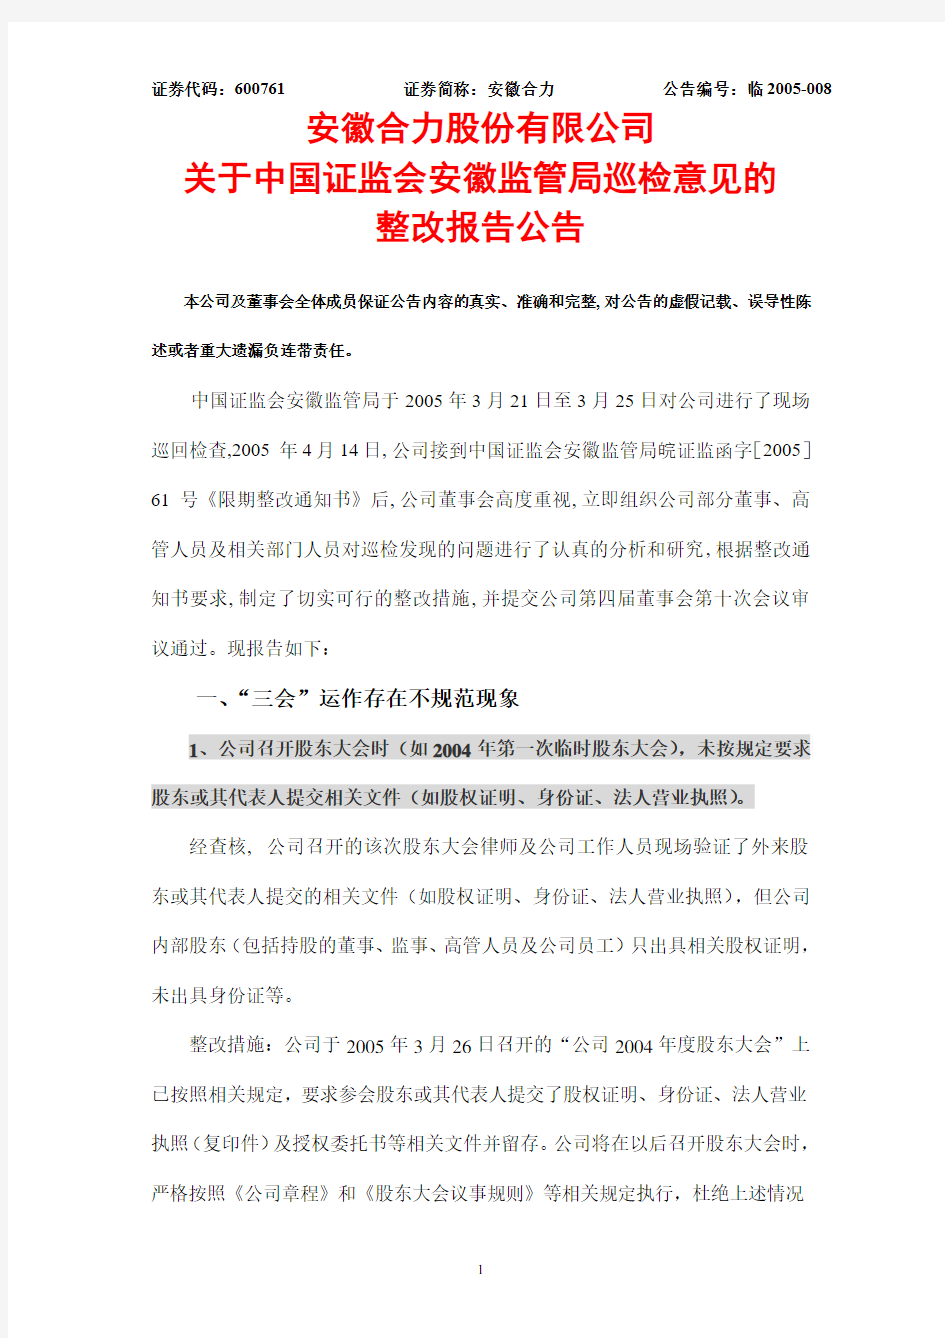 安徽合力股份有限公司关于中国证监会安徽监管局巡检意见的整改报告公告